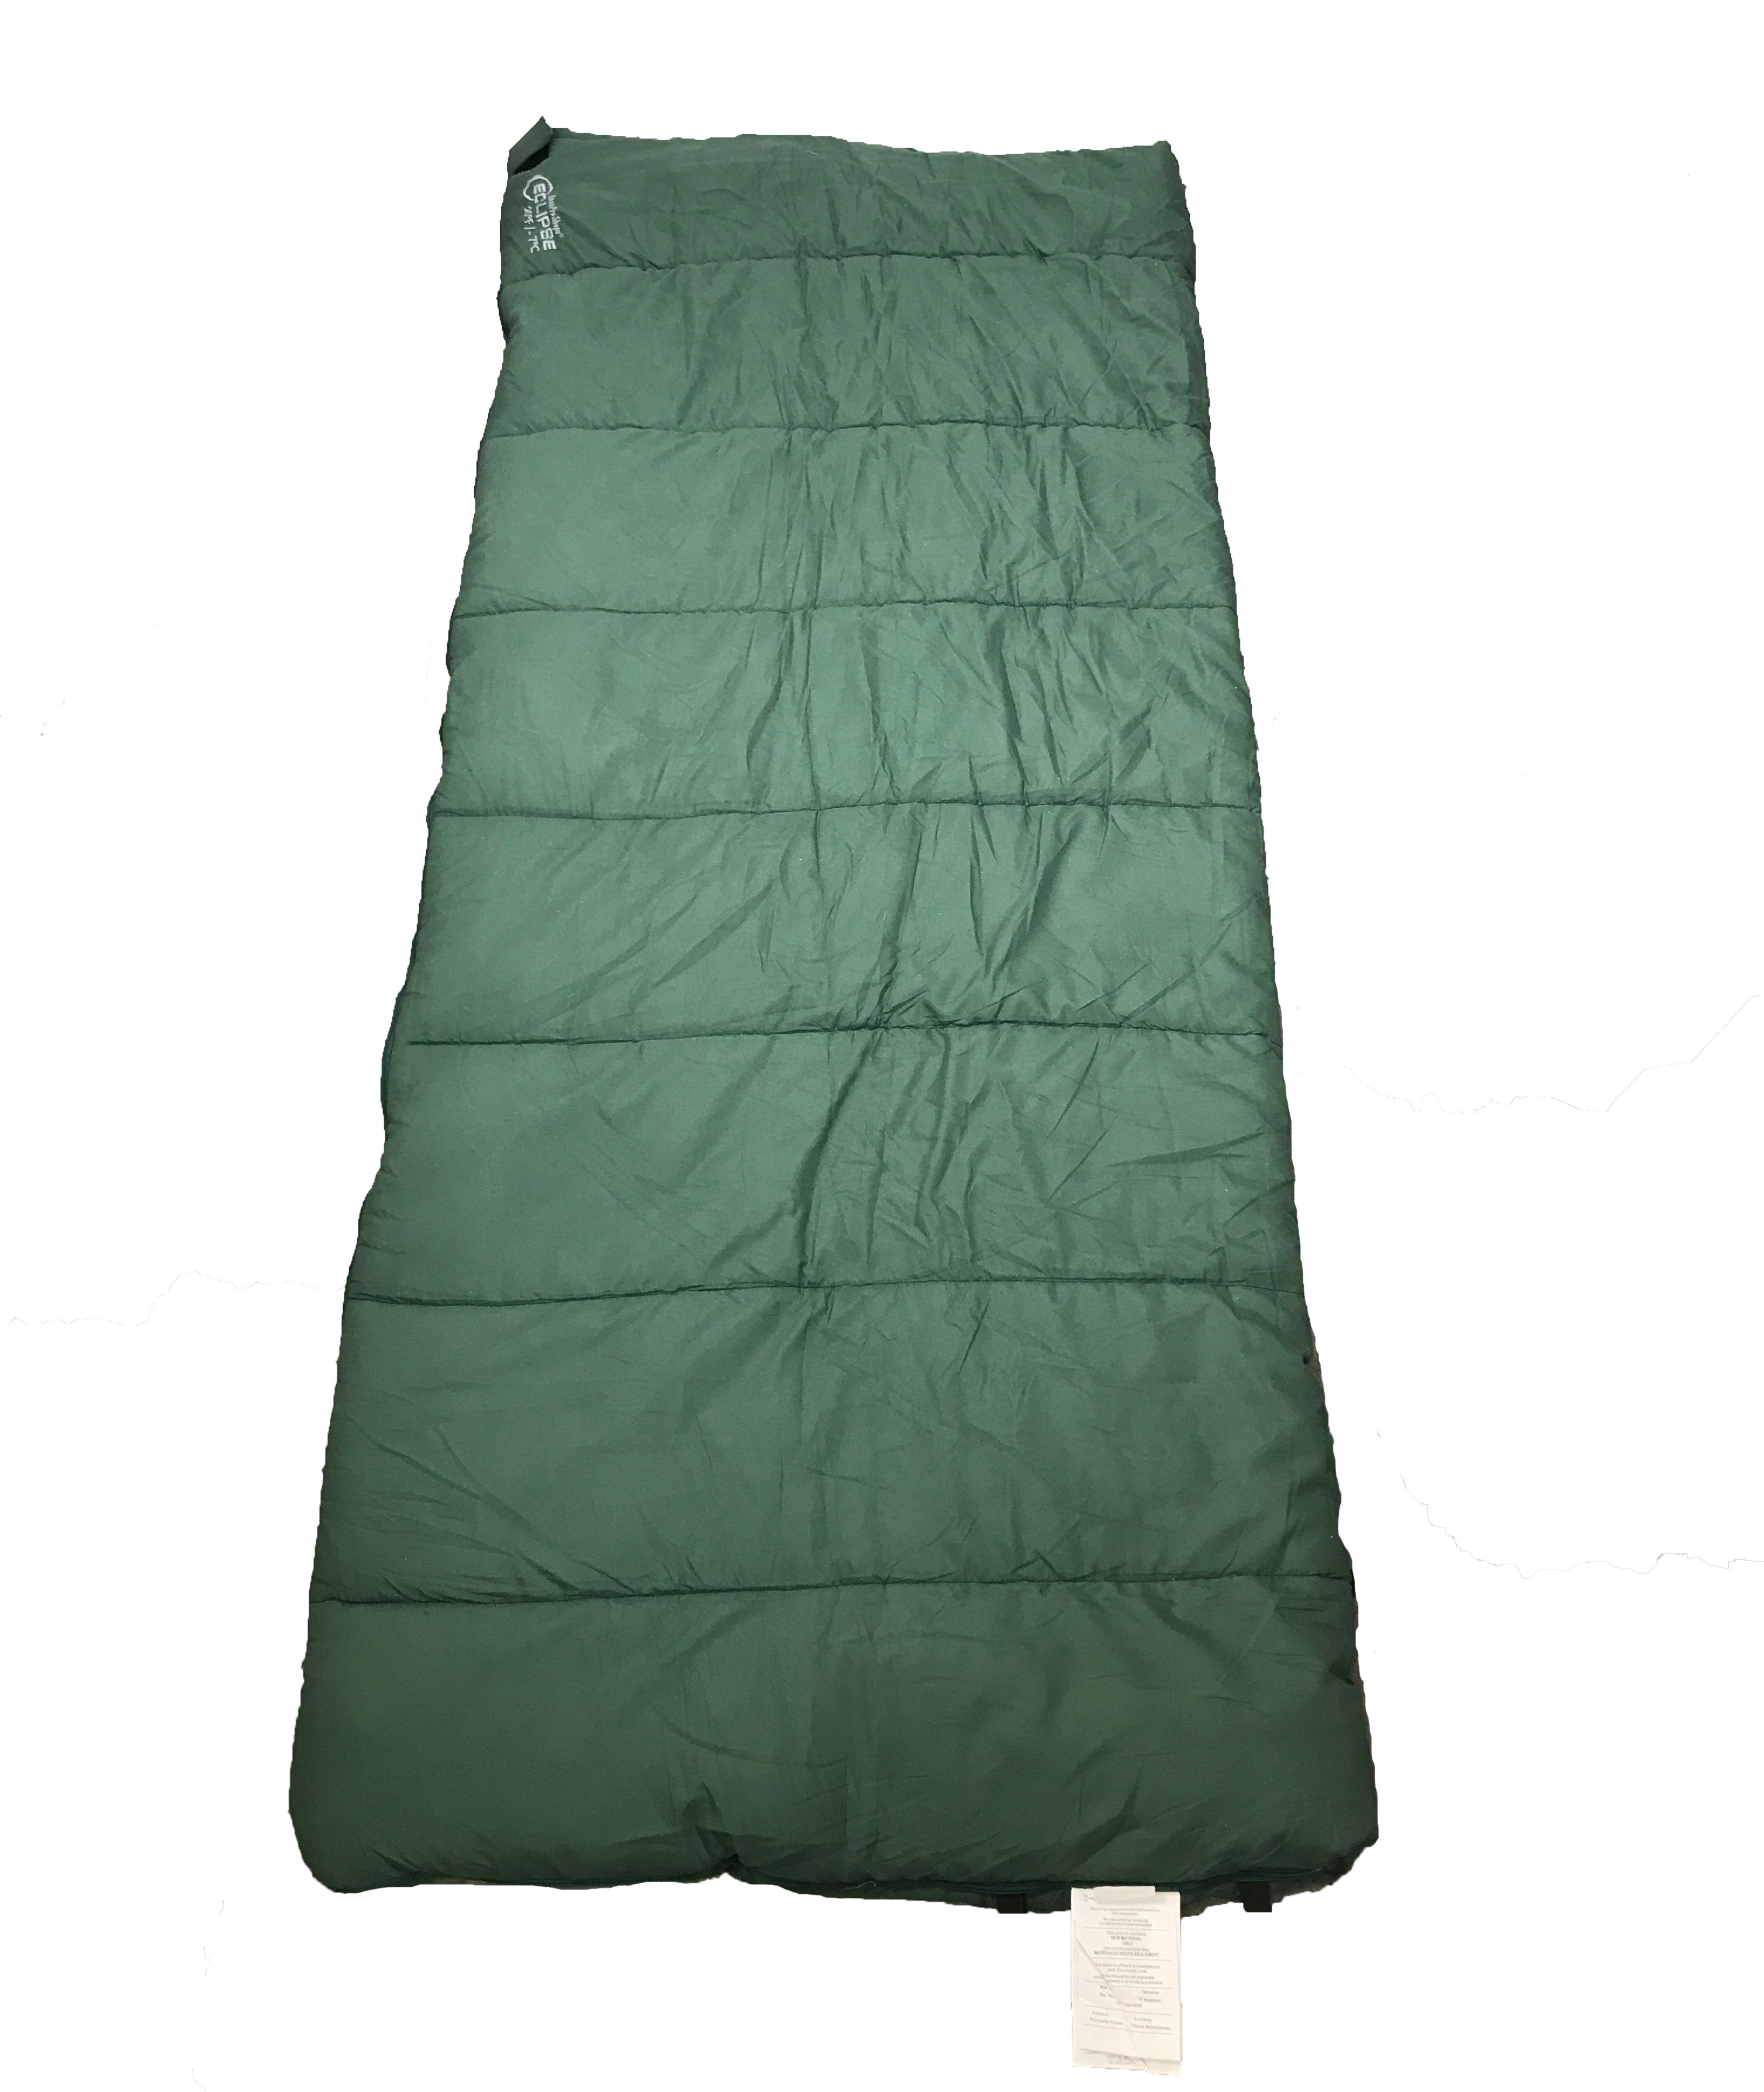 Bass Pro Shop Green Eclipse Sleeping Bag Size 6ft x 32"